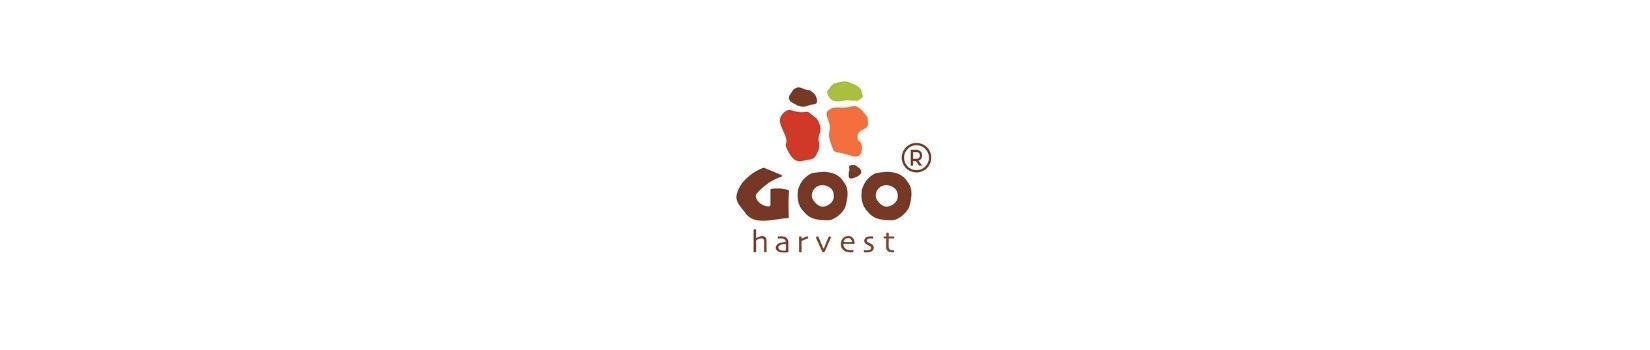 Go'o Harvest